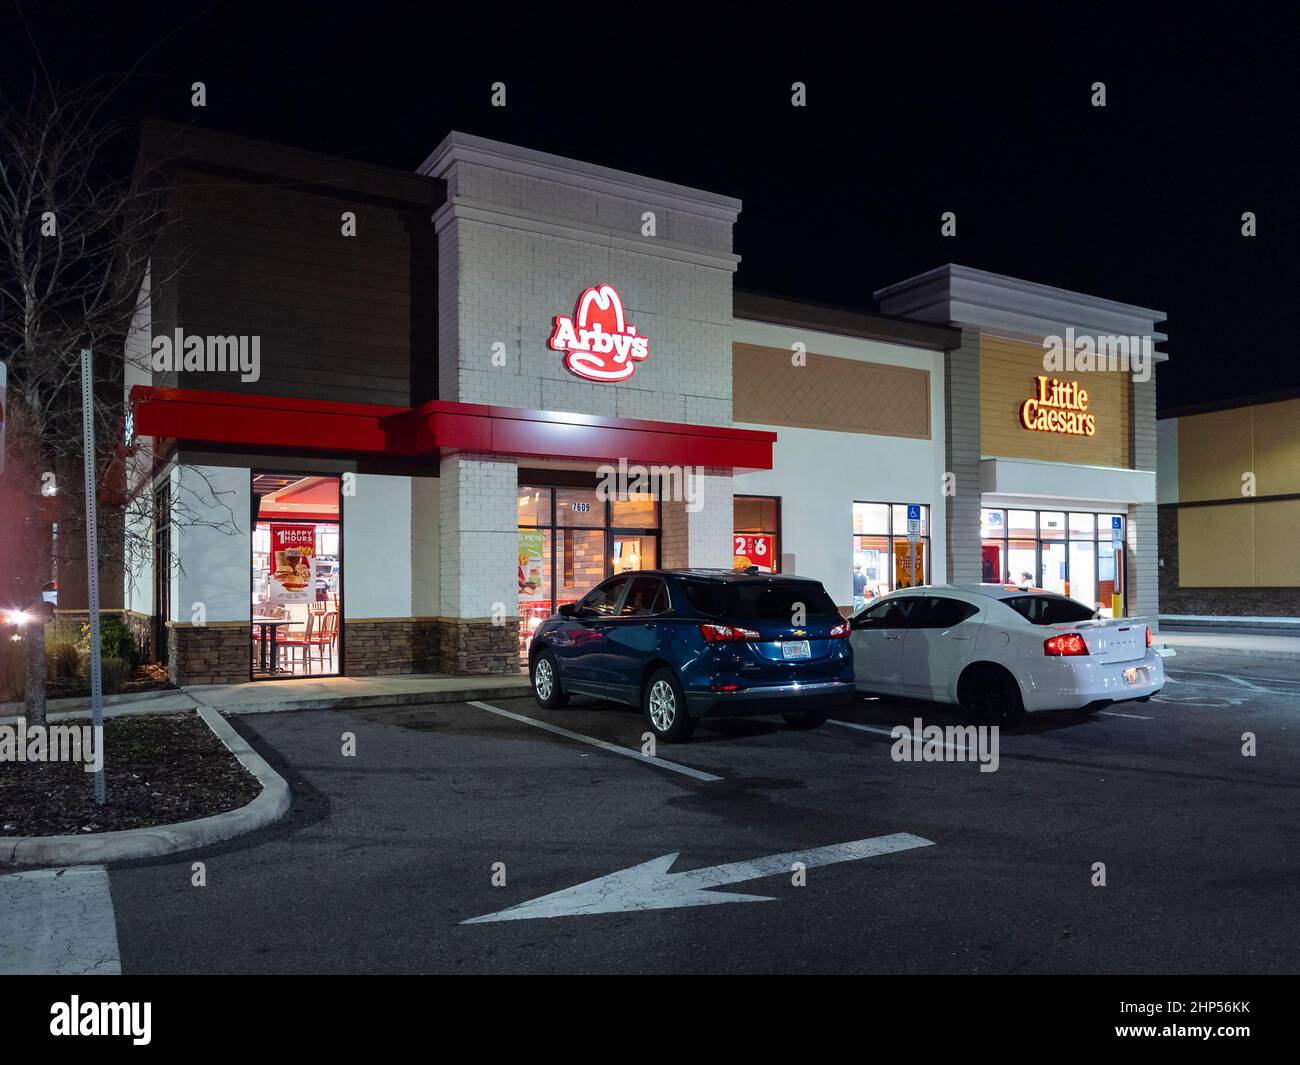 Orlando, Floride - 4 février 2022 : vue de nuit en gros plan sur l'extérieur du restaurant Arby's. Banque D'Images